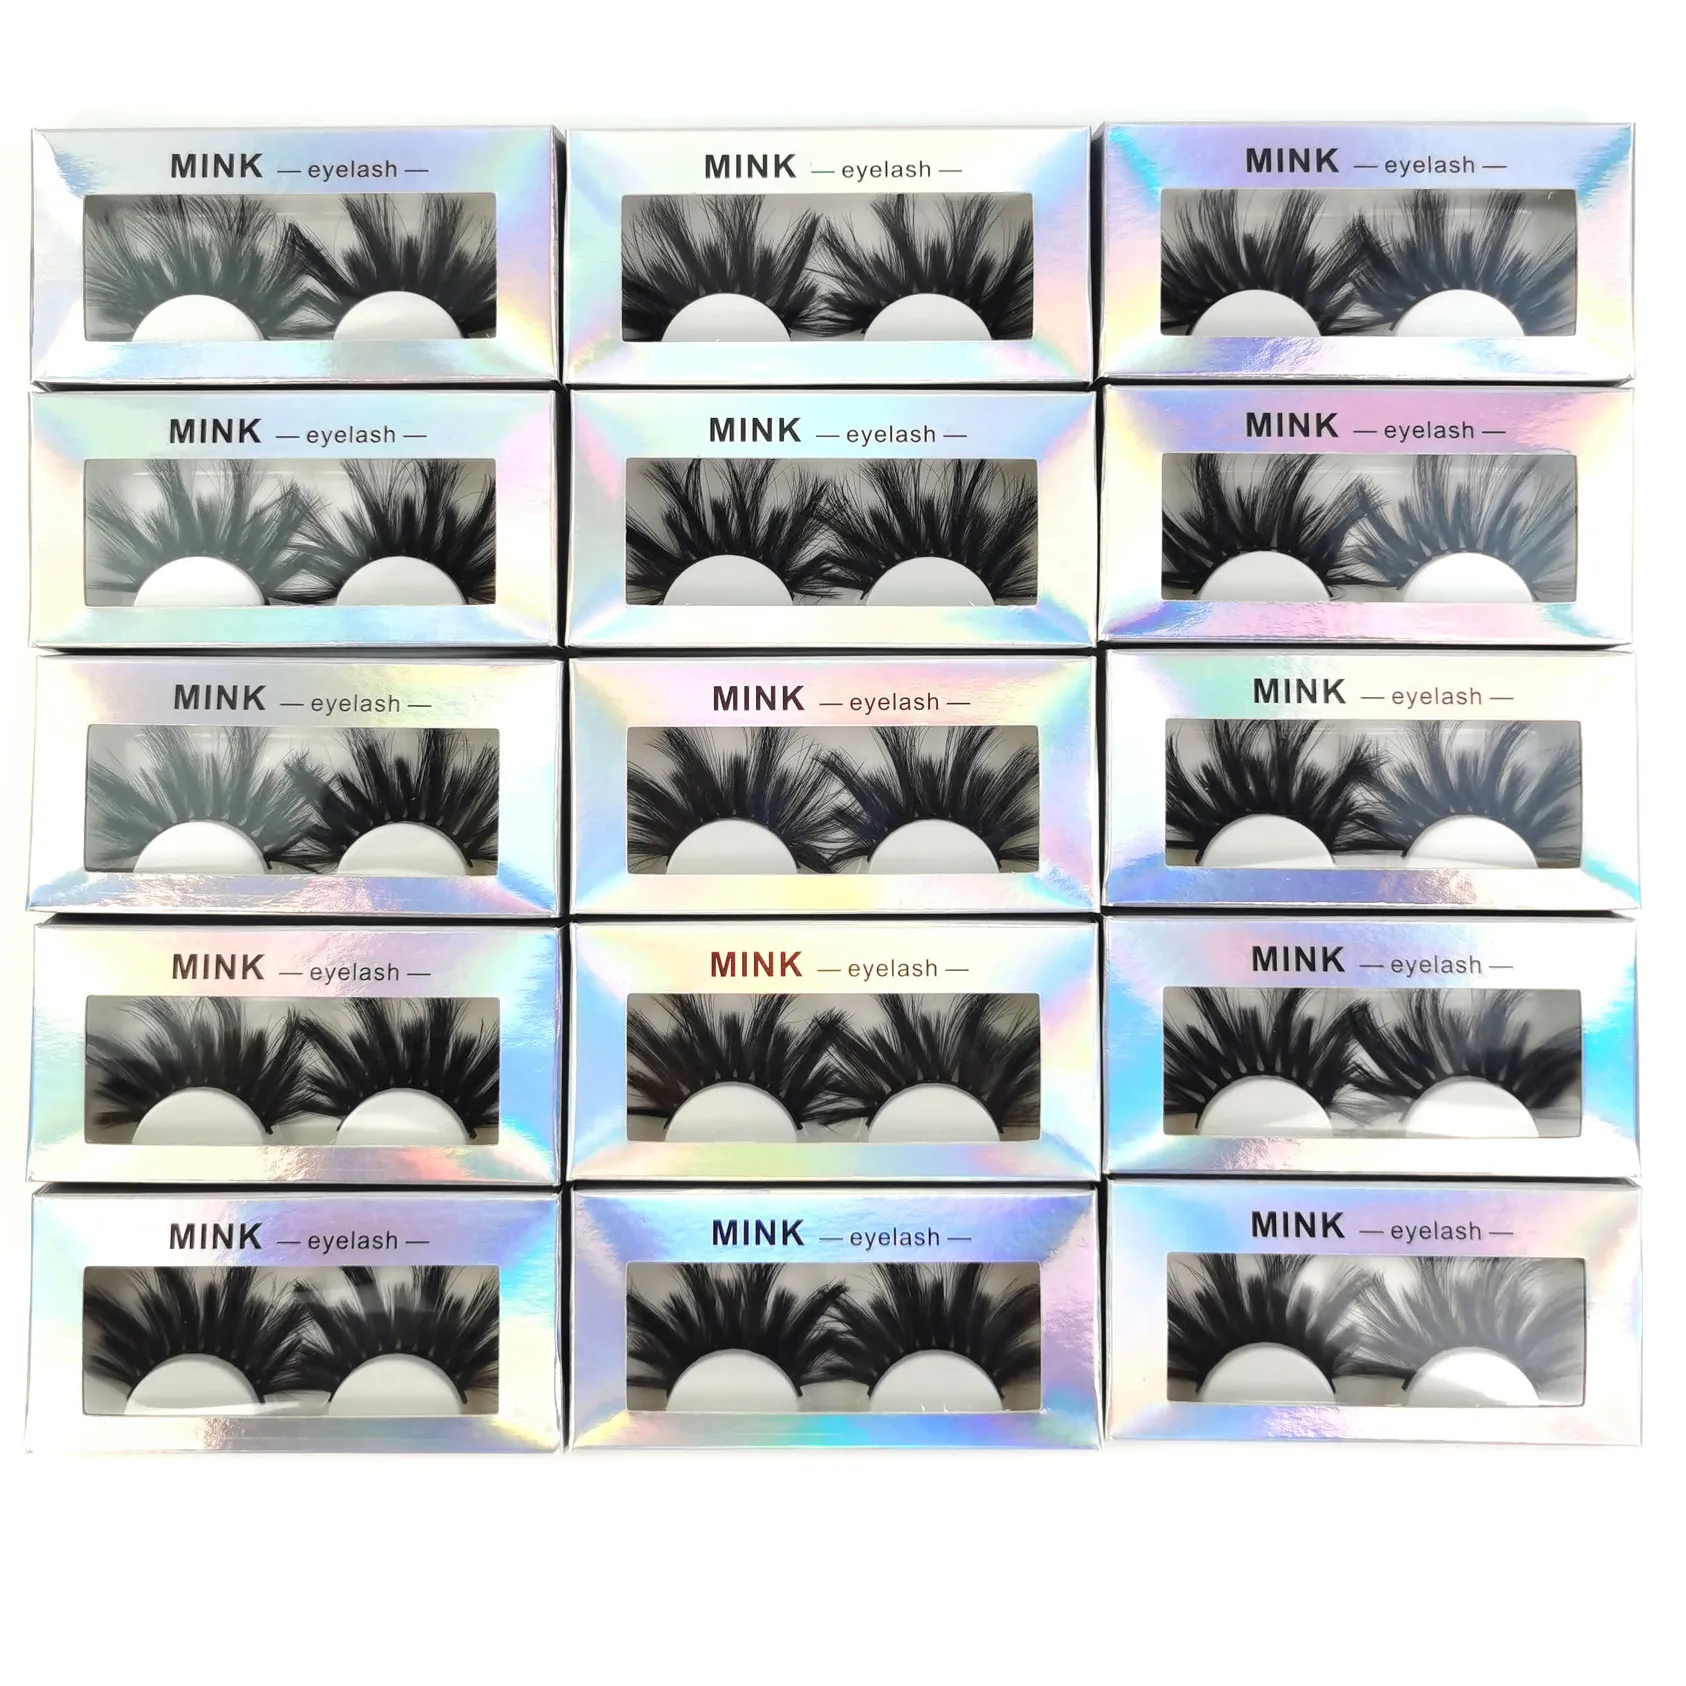 속눈썹 연장 허위 속눈썹 눈 대량 천연 푹신한 푹신한 허풍 3D 밍크 속눈썹 부드러운 두꺼운 수제 속눈썹 메이크업 화장품